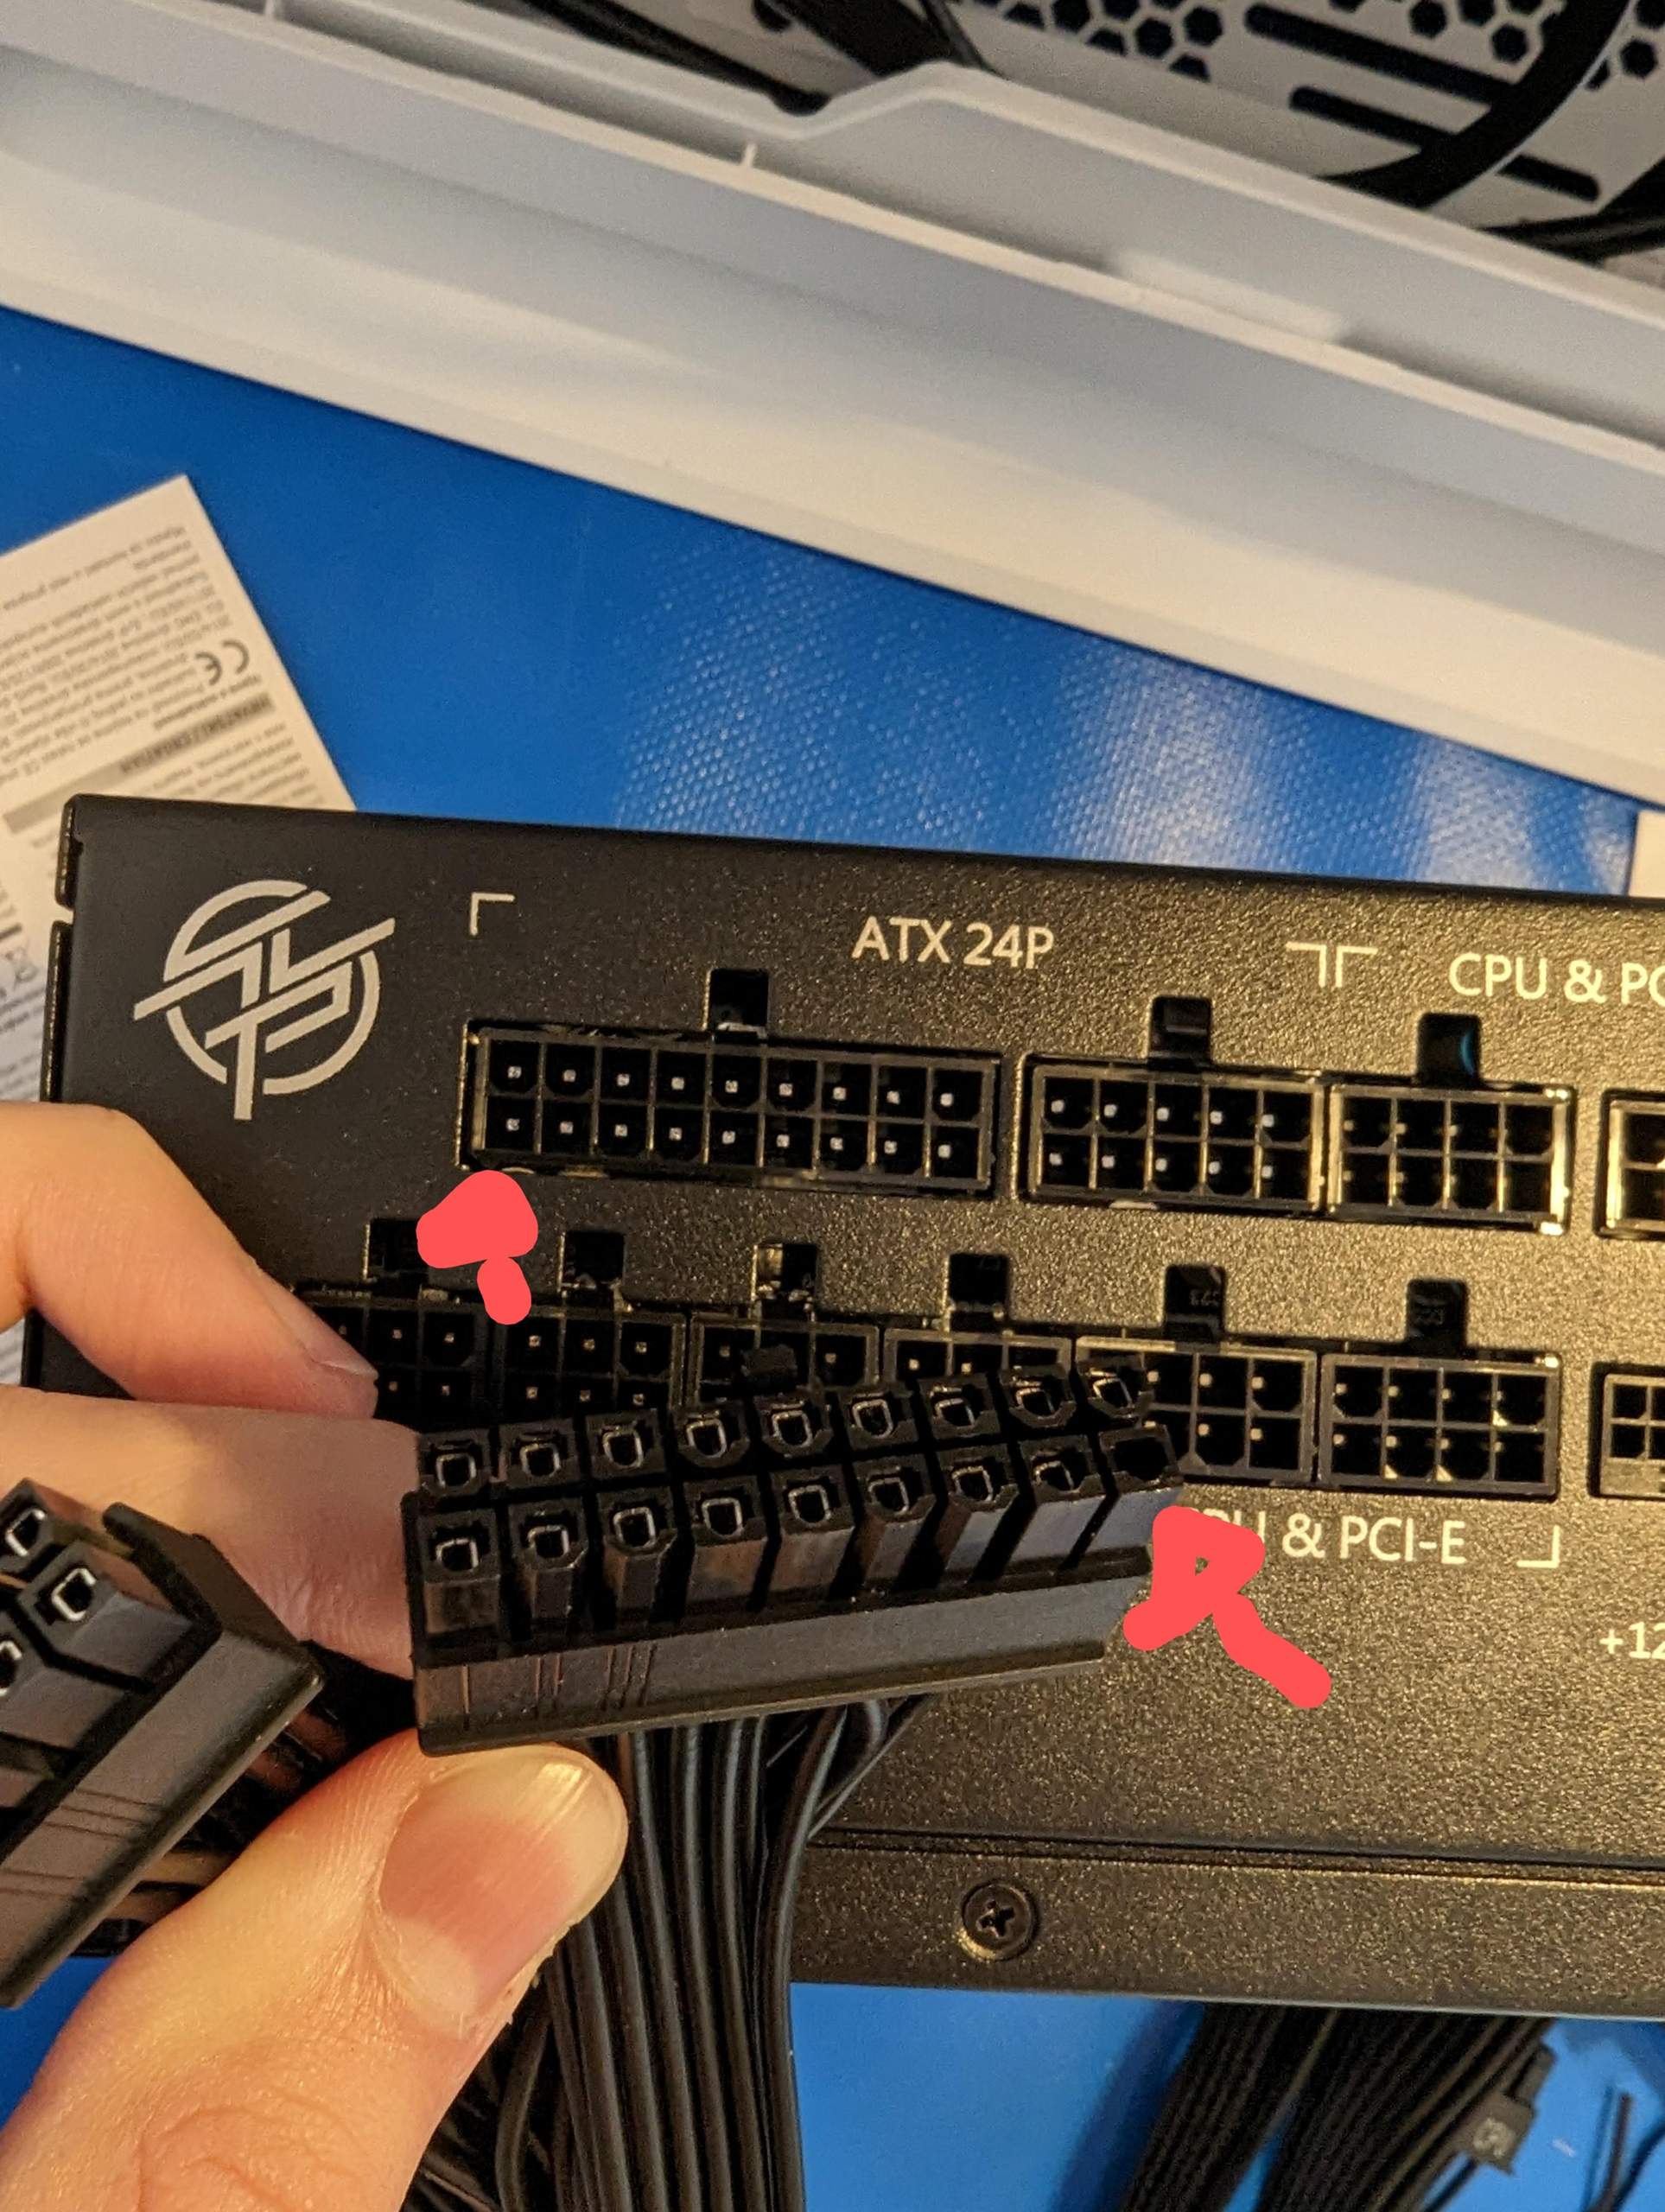 Ein Pin fehlt beim 24 Pin ATX stecker? (Gaming PC, Netzteil, MSI)